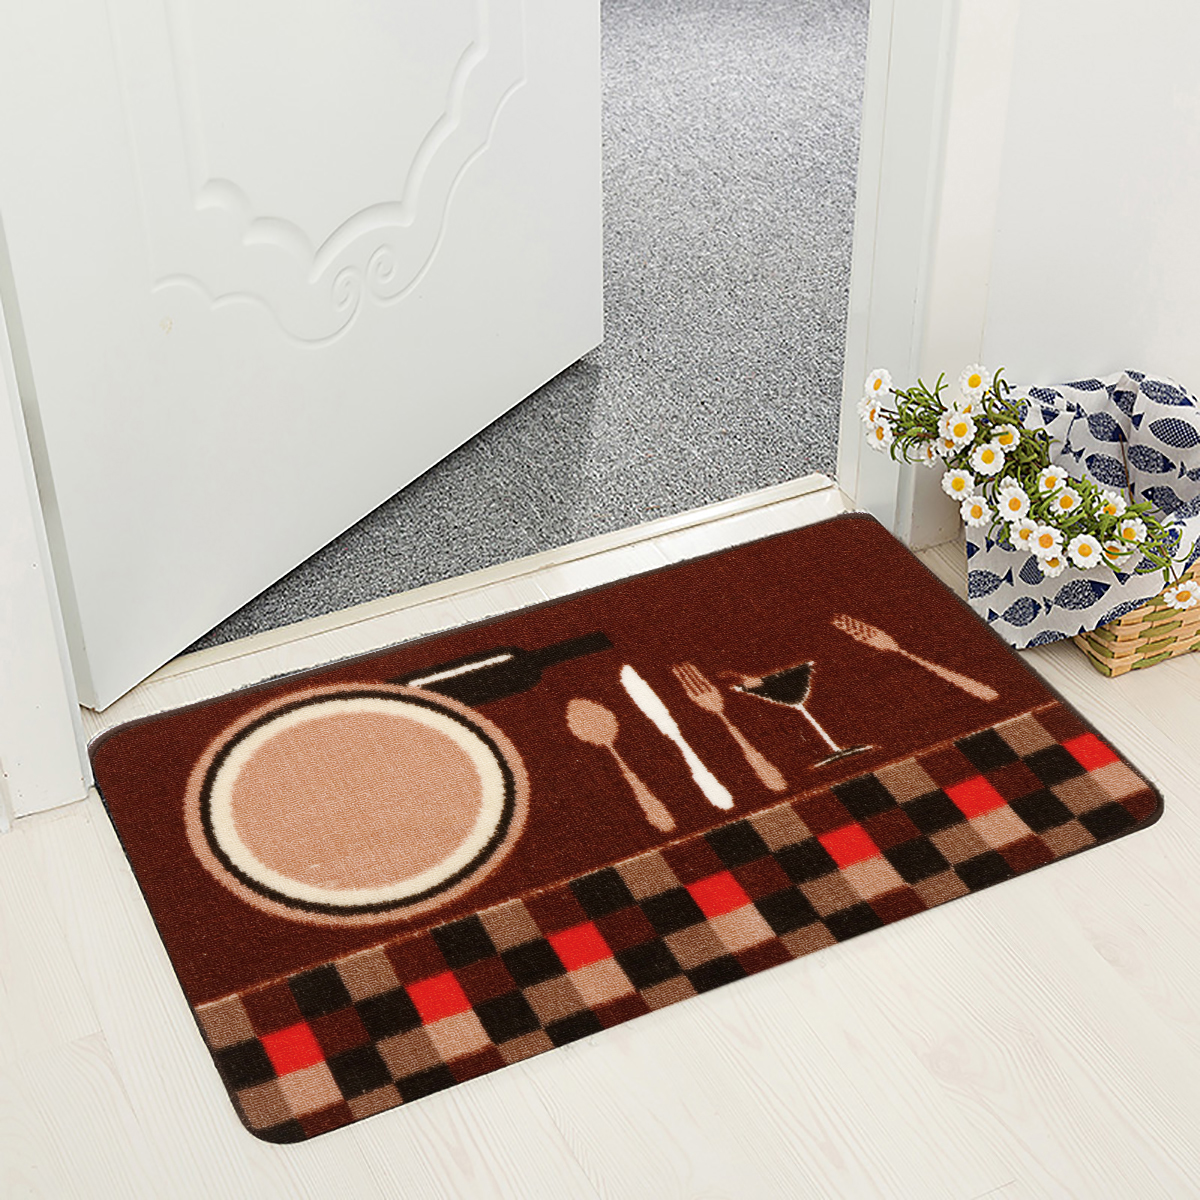 Non-slip-Door-Floor-Rug-Mat-Kitchen-Bathroom-Bedside-Soft-Carpet-Home-Decorations-1457106-10